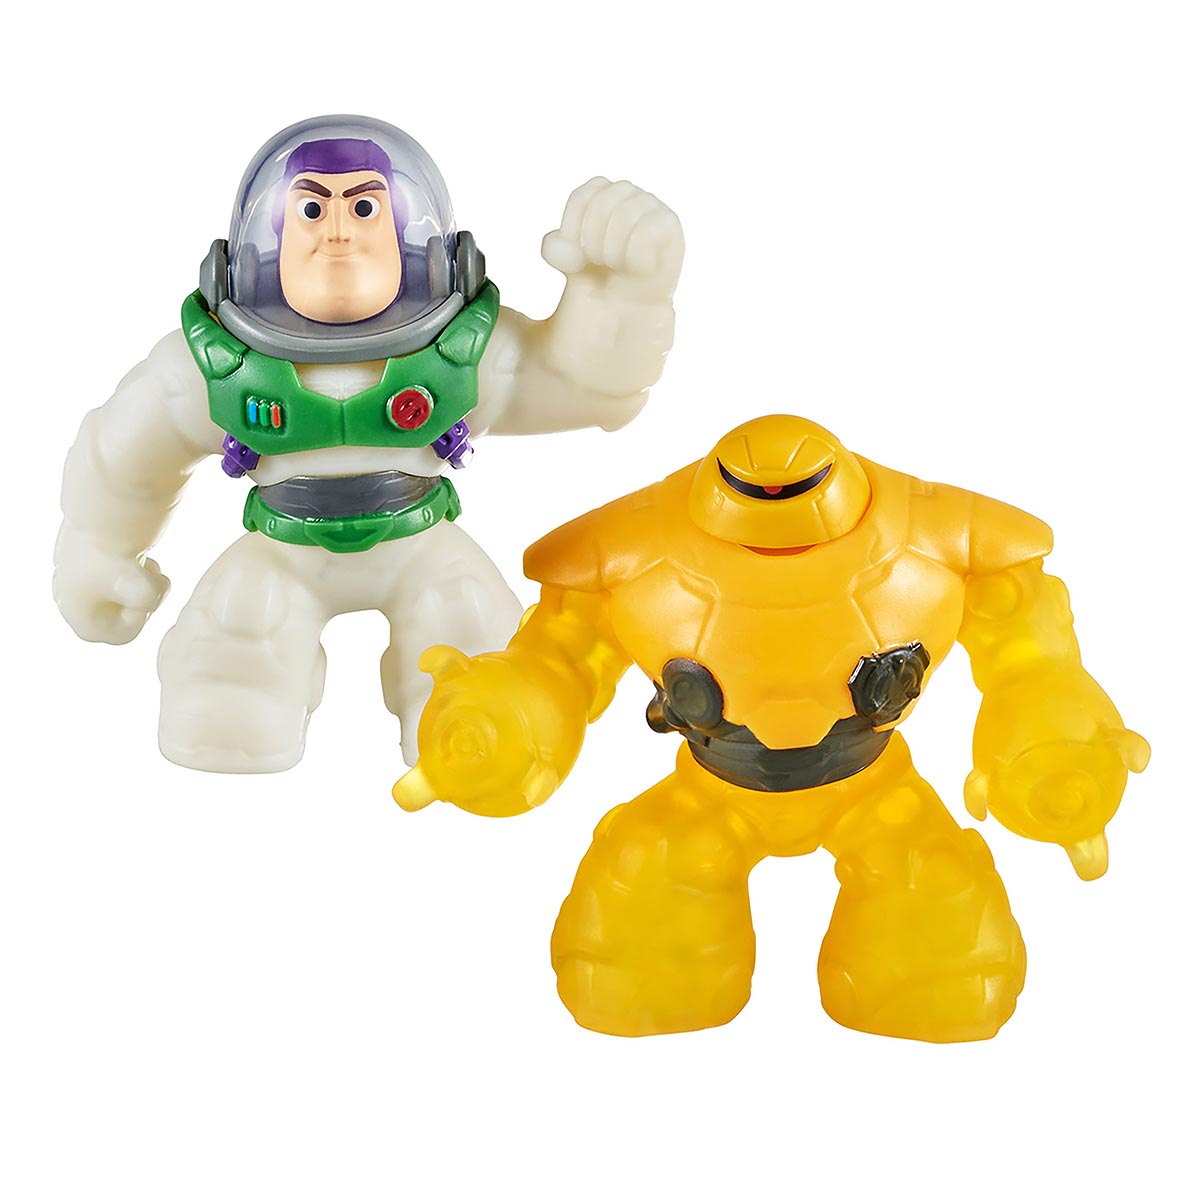 Boneco Elástico 12cm Buzz Lightyear vs Zyclops - Goo Jit Zu